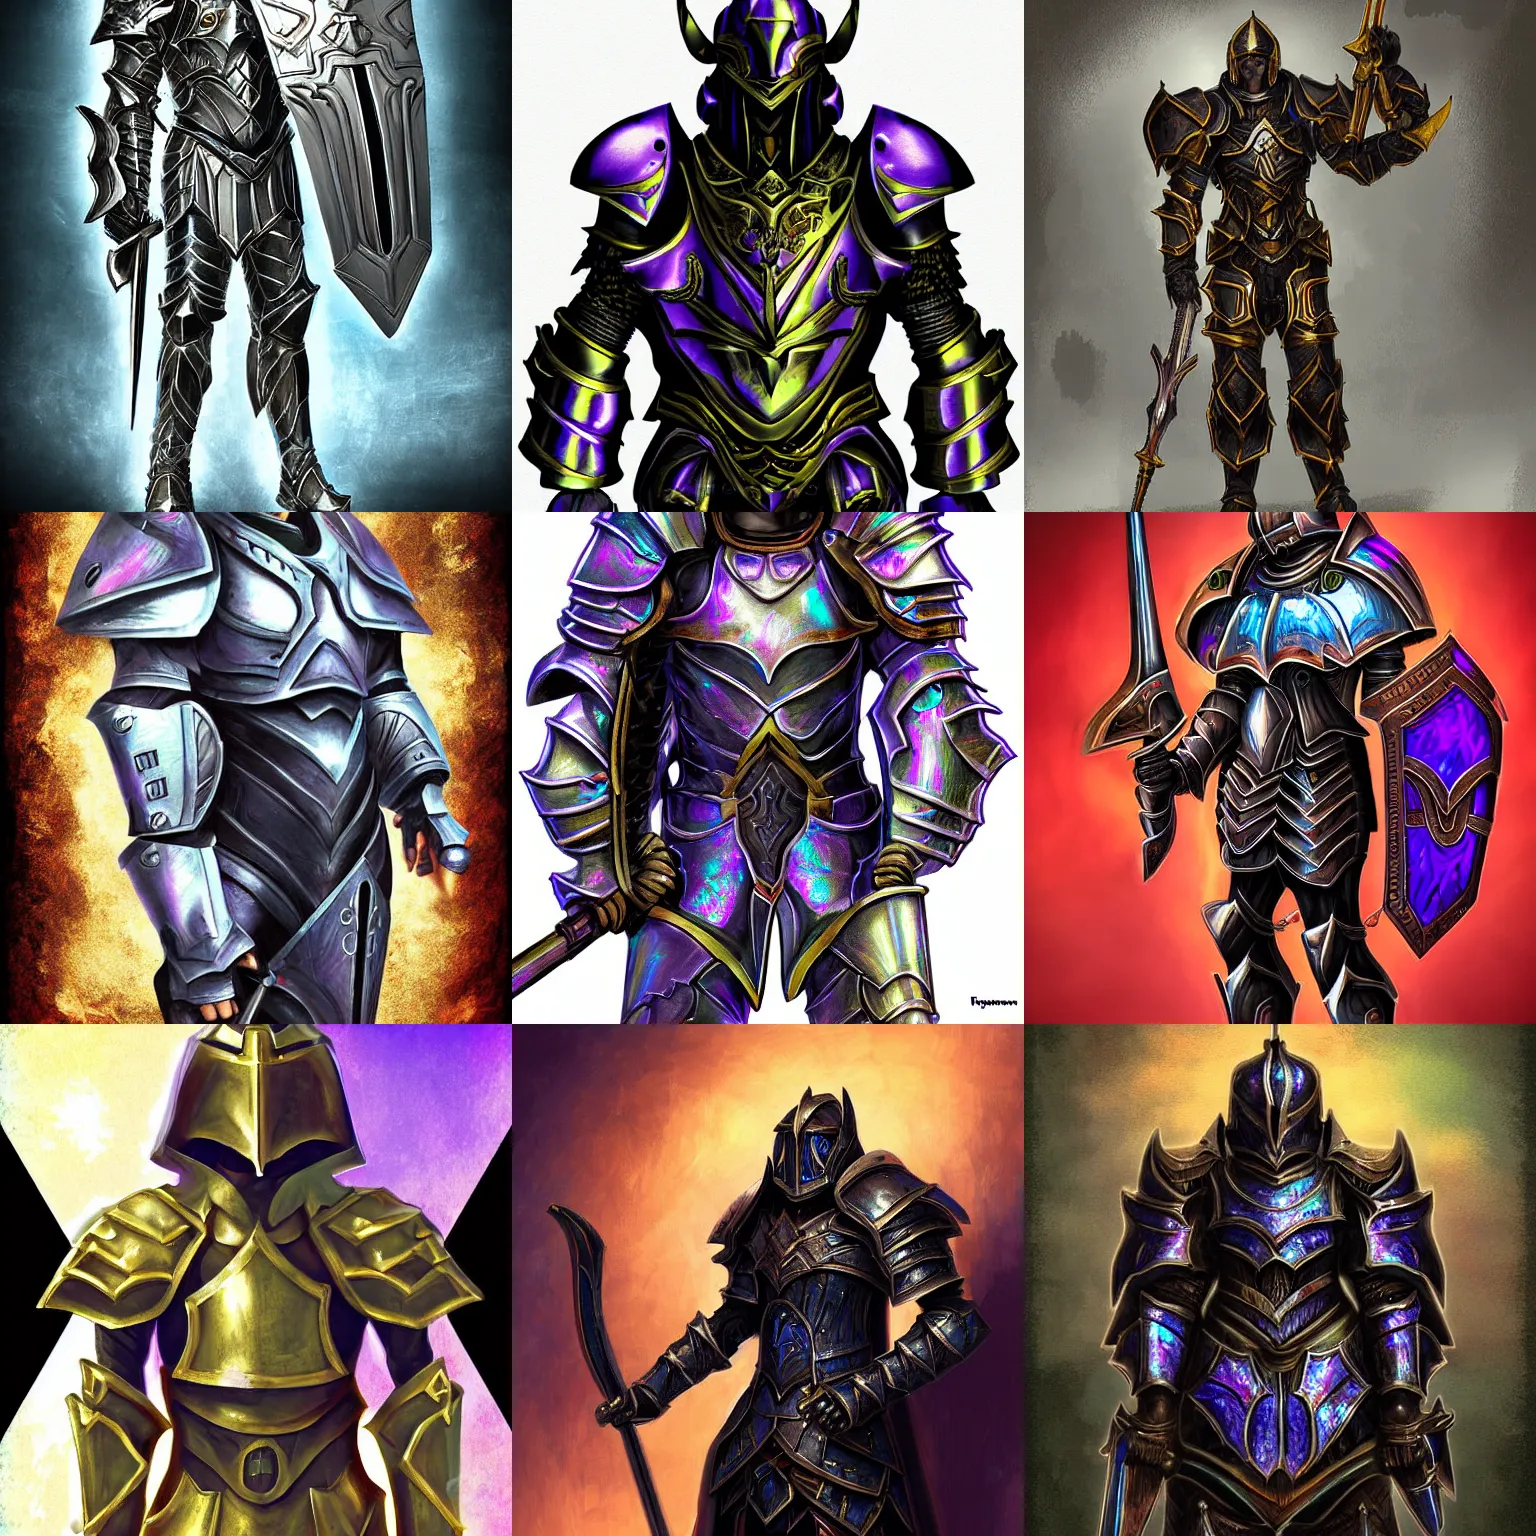 Prompt: A paladin in iridescent heavy armor, dark fantasy, digital art.